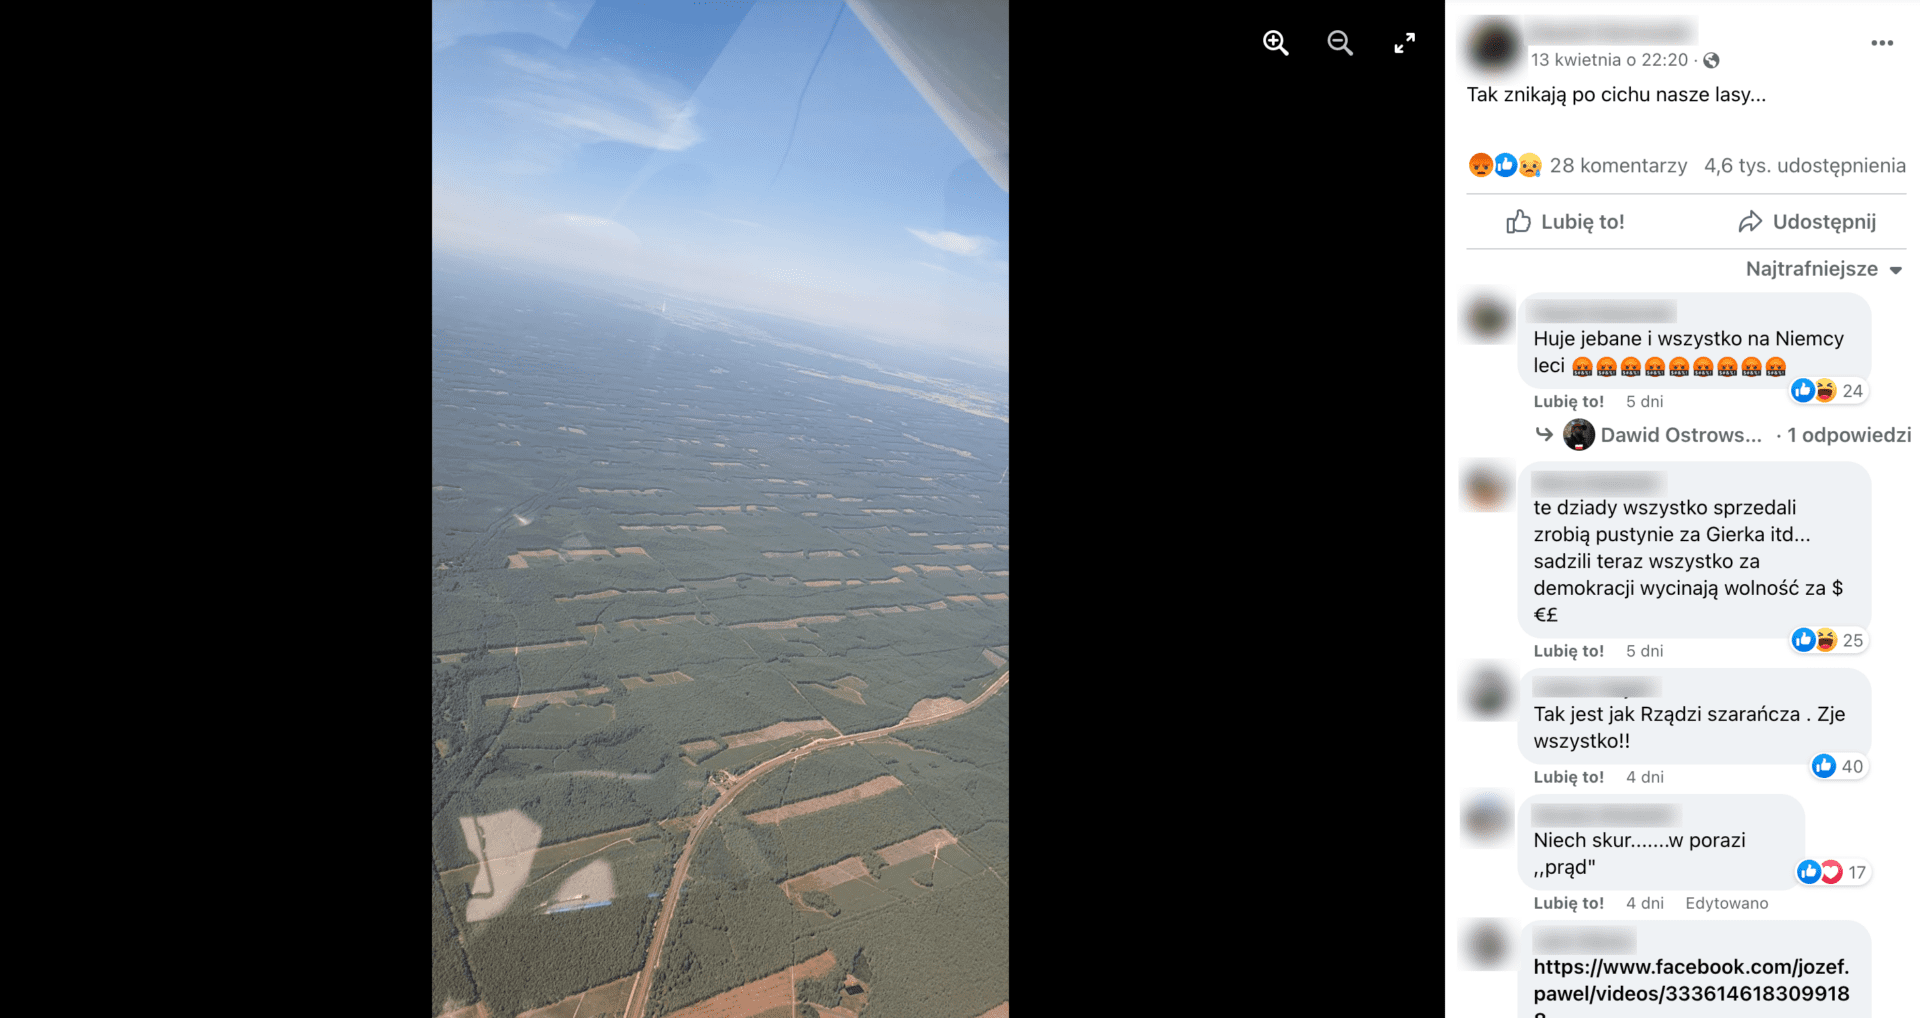 Zdjęcie samolotu przedstawiające lasy ze stosunkowo niewielkimi obszarami niepokrytymi drzewami